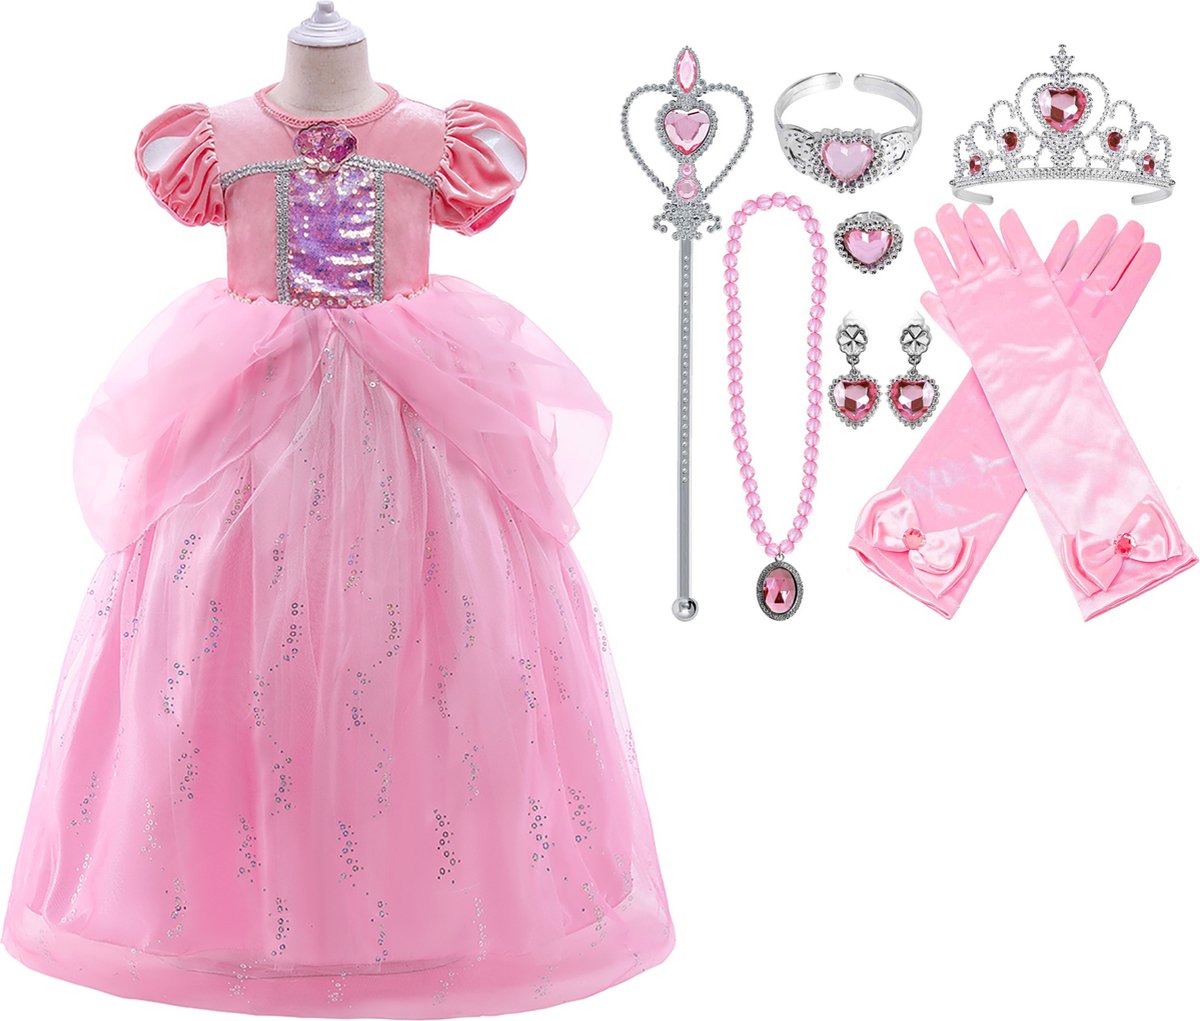 Prinsessenjurk meisje - Prinses Ariel - Roze - 110/116(120) + Tiara (Kroon) / Toverstaf + Juwelen + Handschoenen - Zeemeermin verkleedkleren